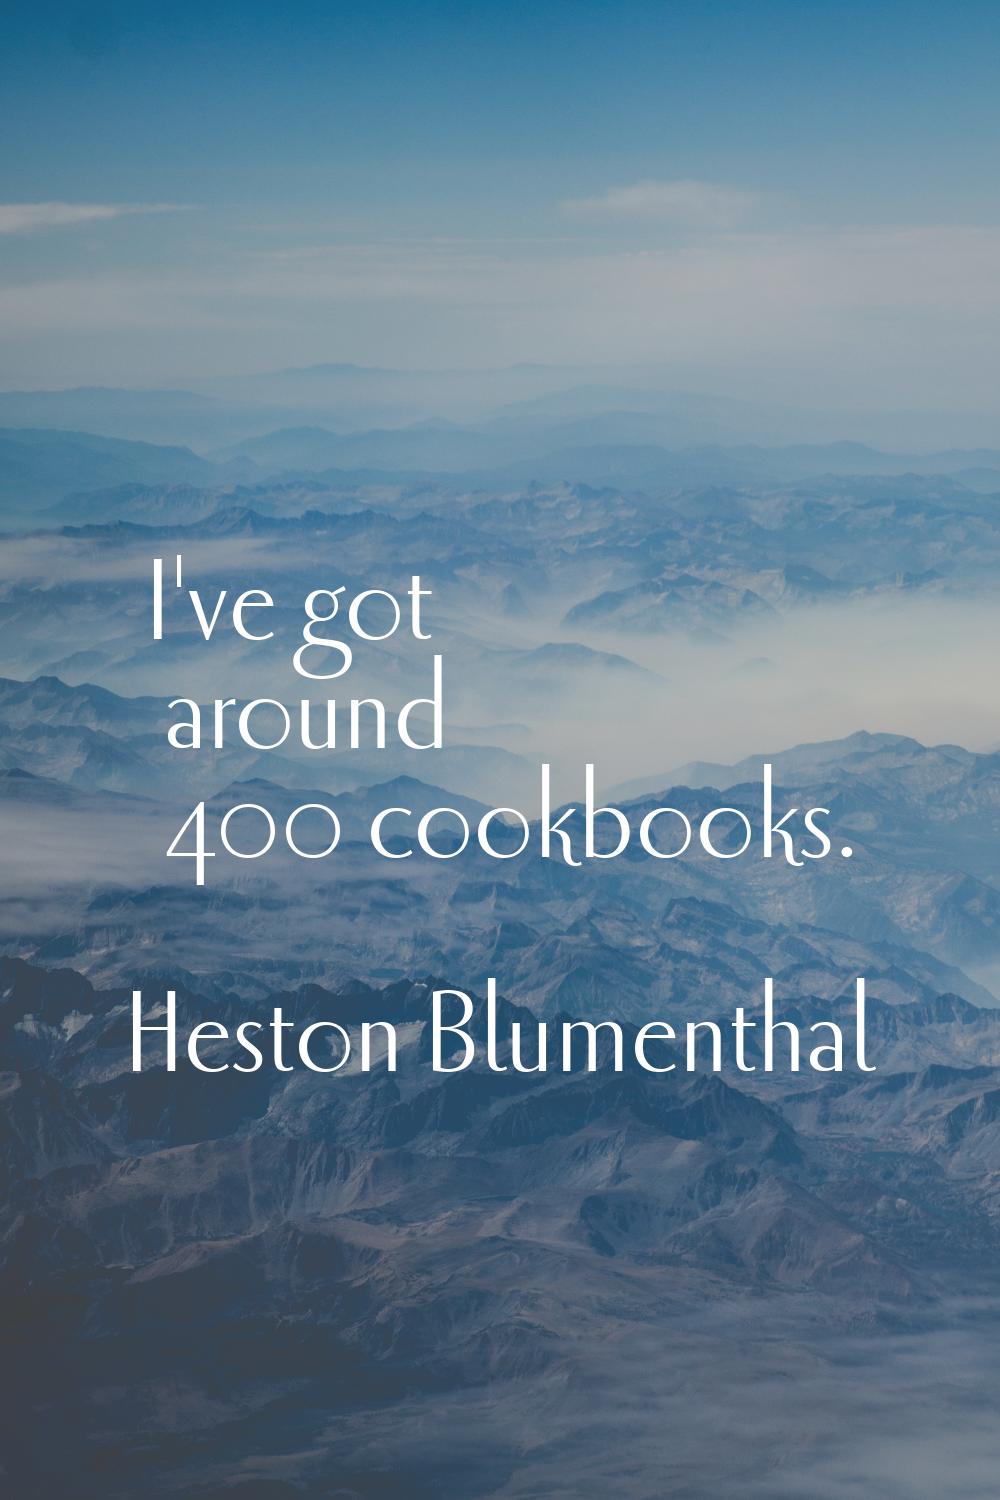 I've got around 400 cookbooks.